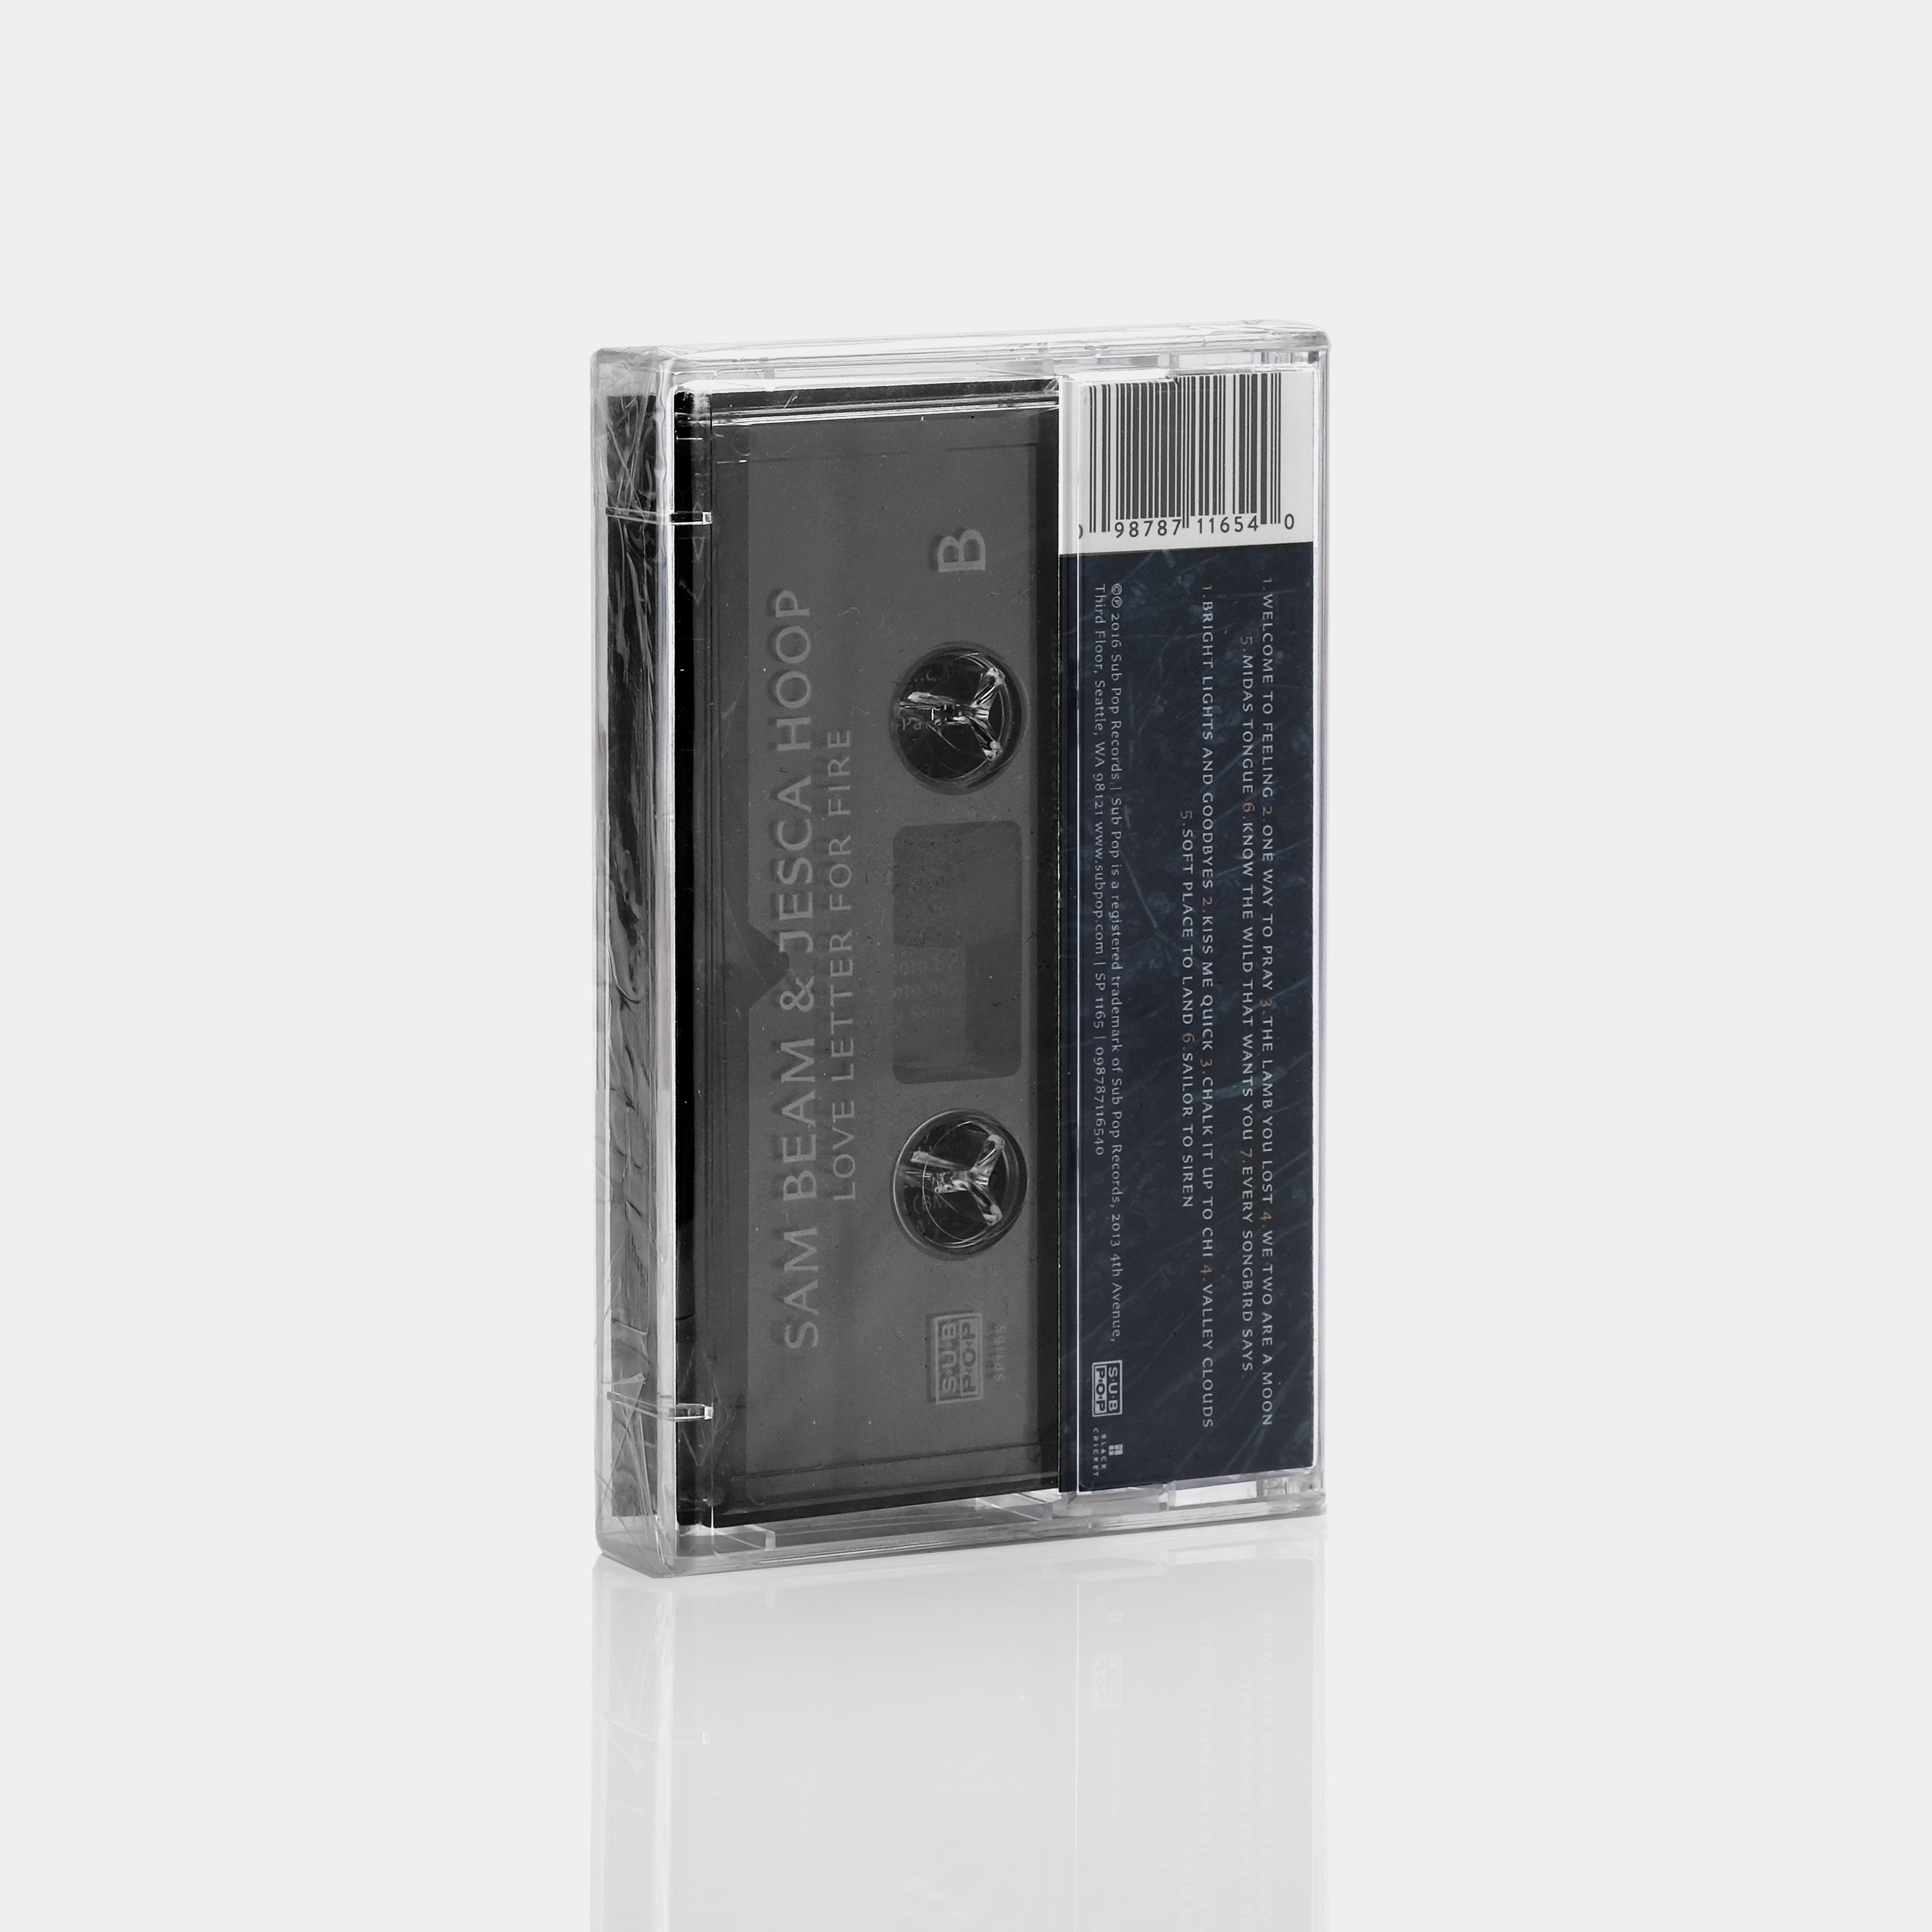 Sam Beam & Jesca Hoop - Love Letter For Fire Cassette Tape